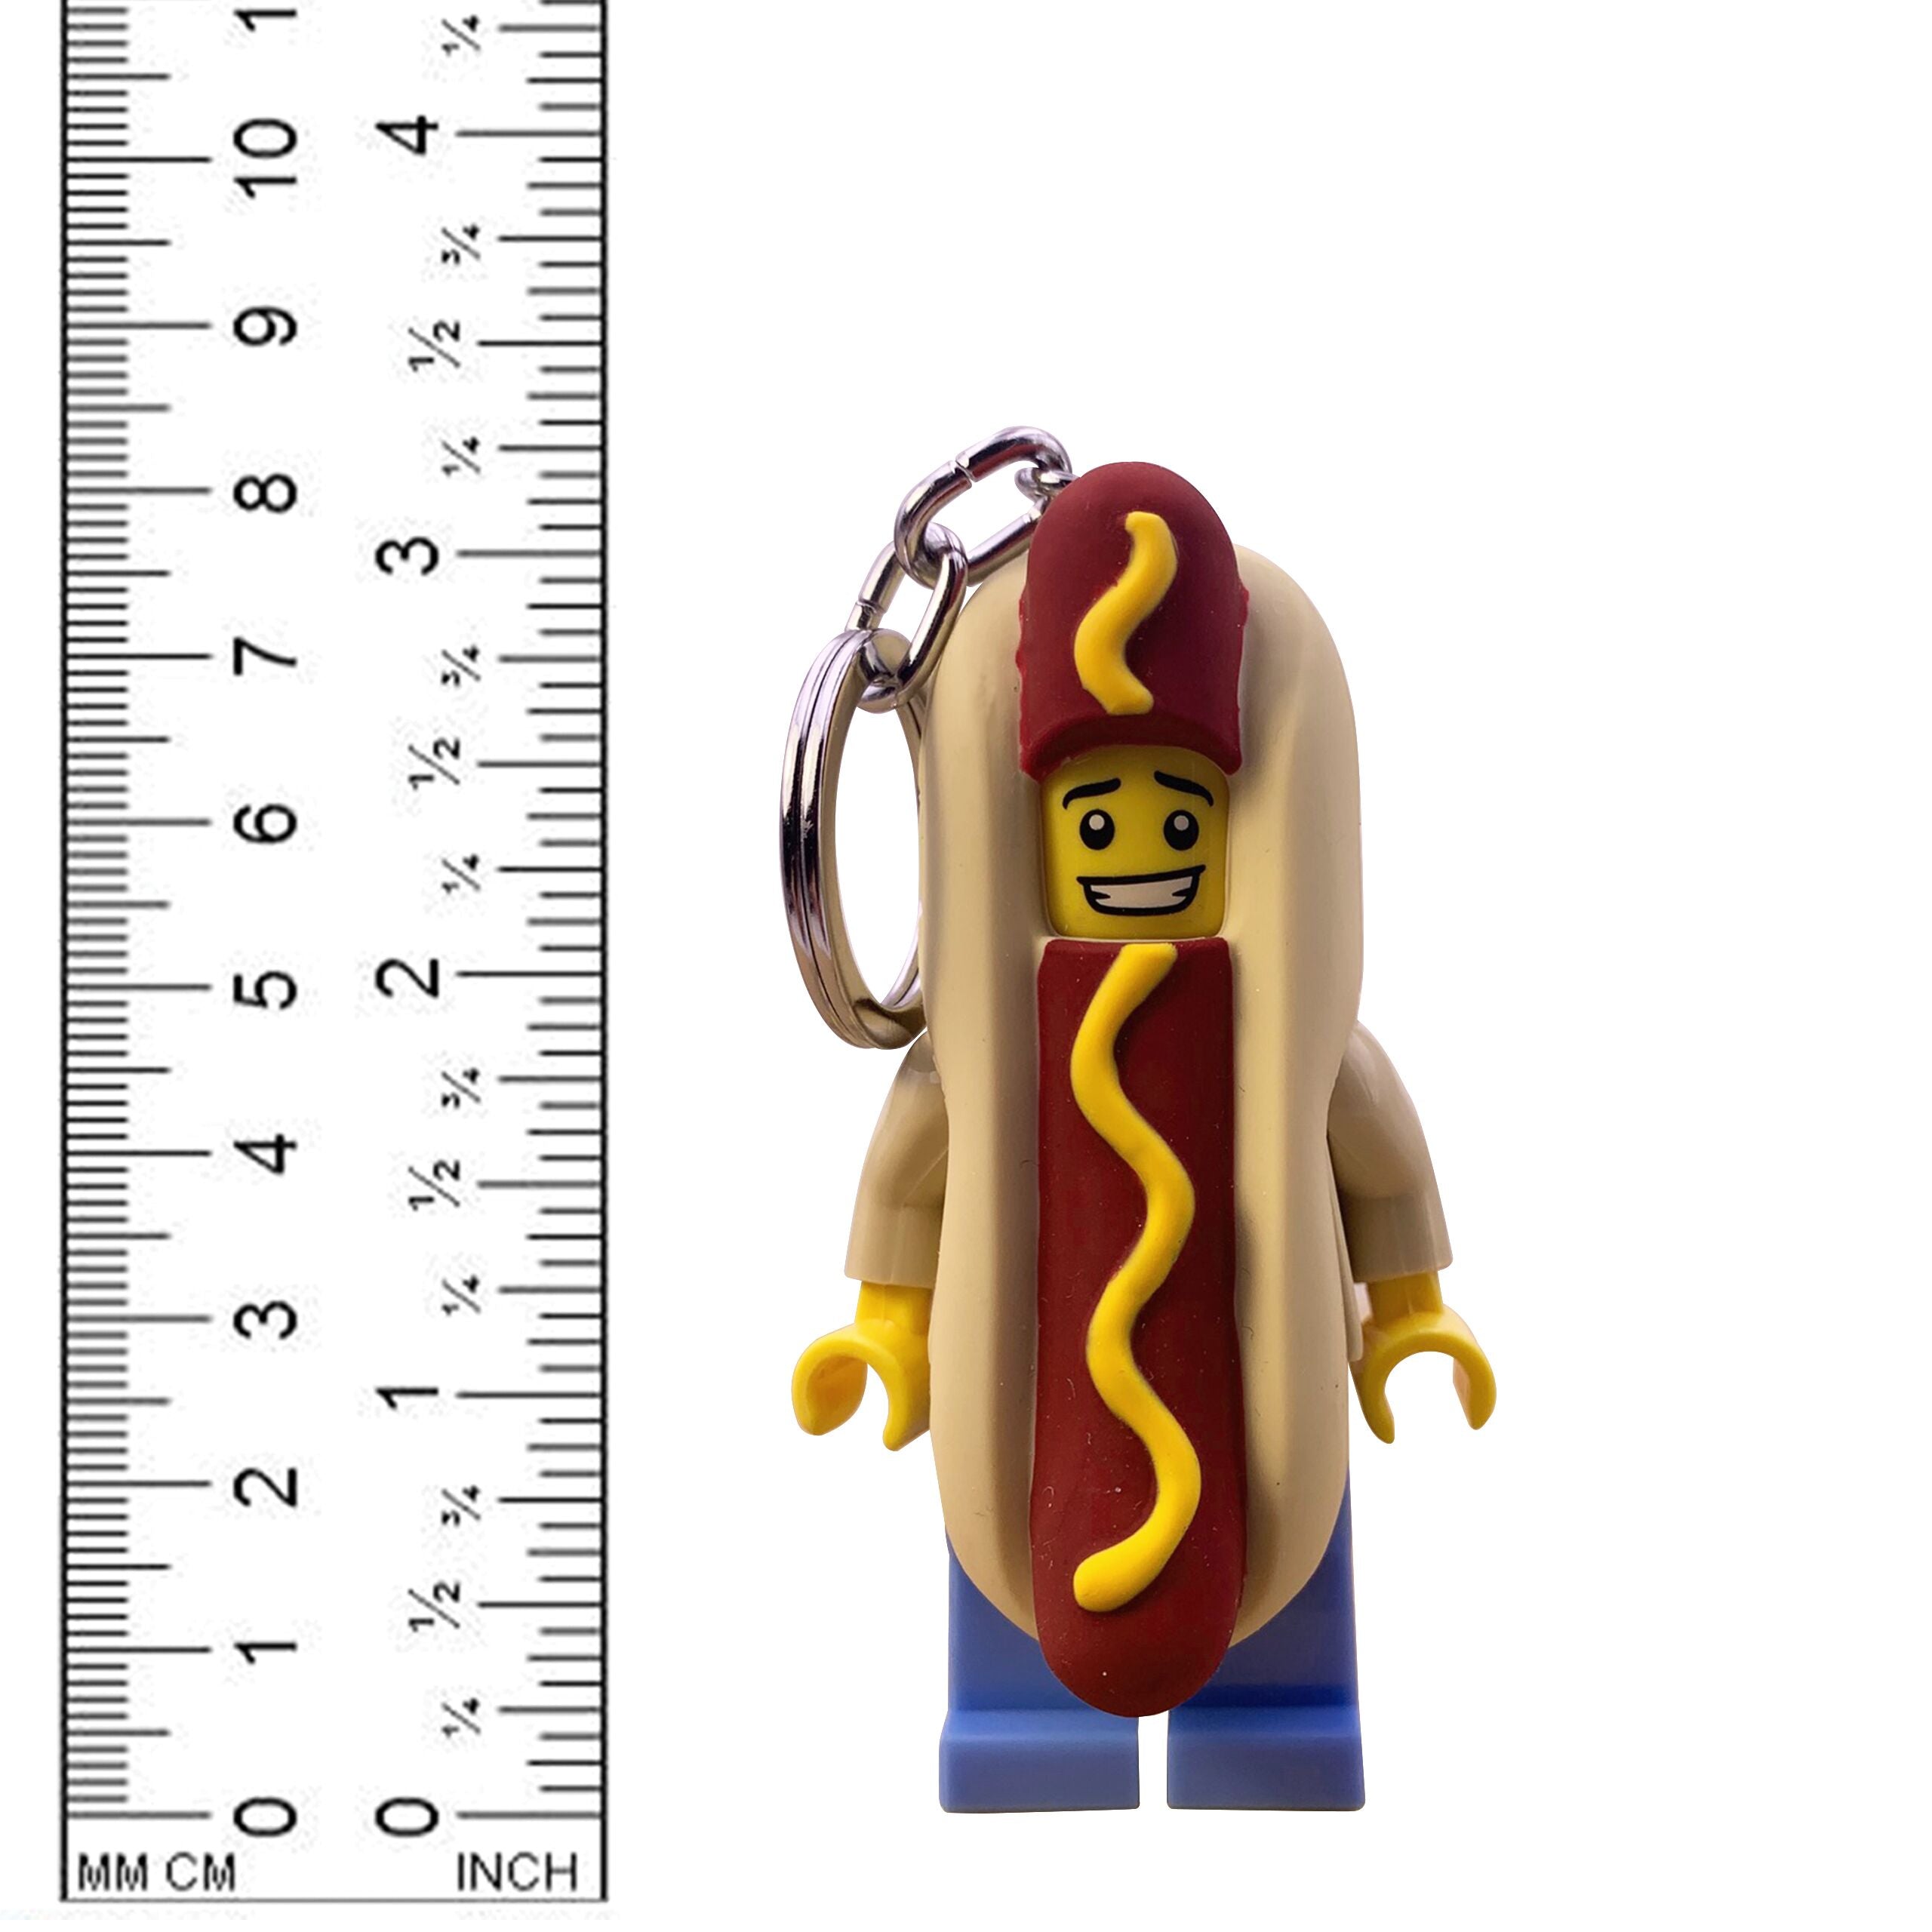 LEGO Hot Dog Man LED Keychain Flashlight